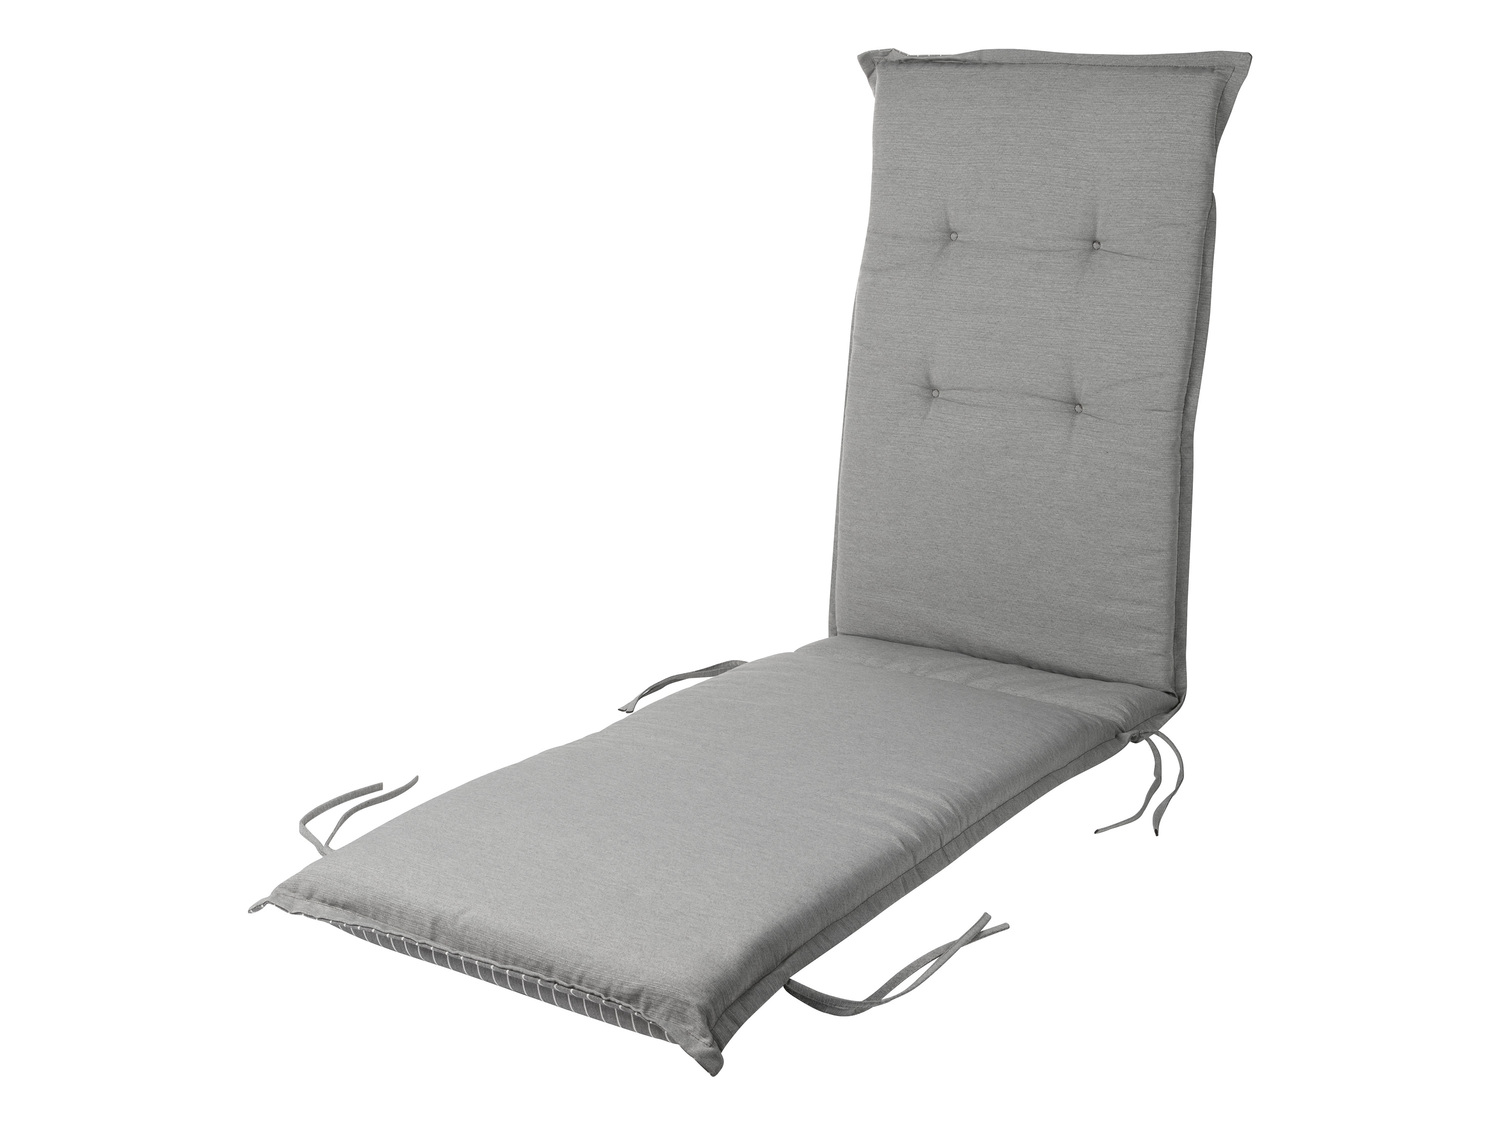 Dwustronna poduszka na leżak , cena 79,90 PLN 
- regulowana taśma z tyłu i boczne ...